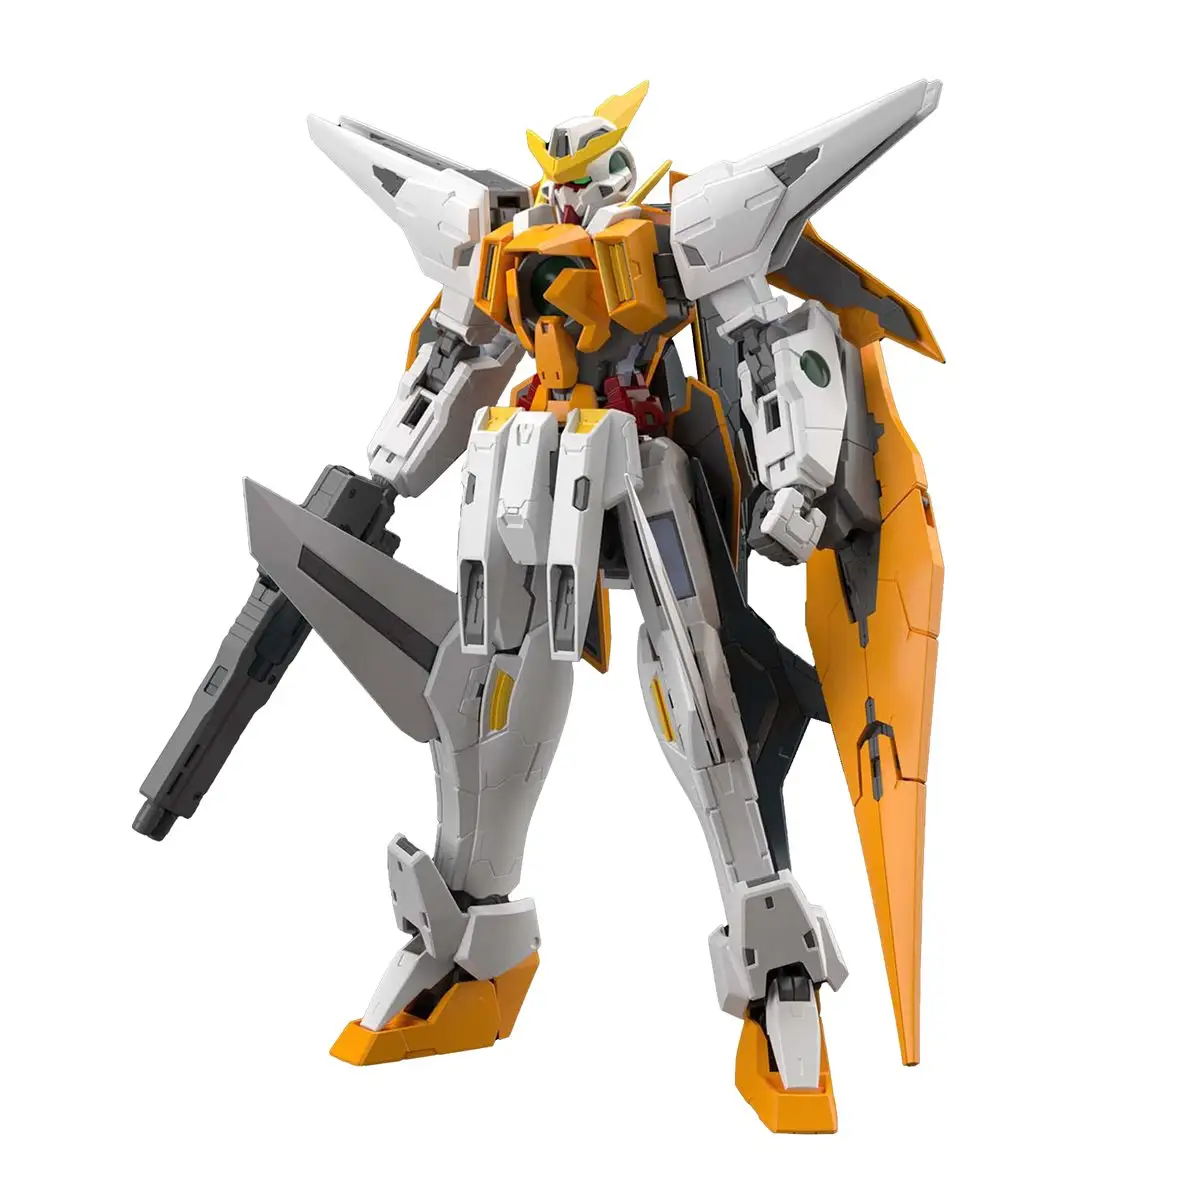 Personalizado Gundam 00 Gundam Kyrios Master Grade 1:100 Escala Modelo Kit